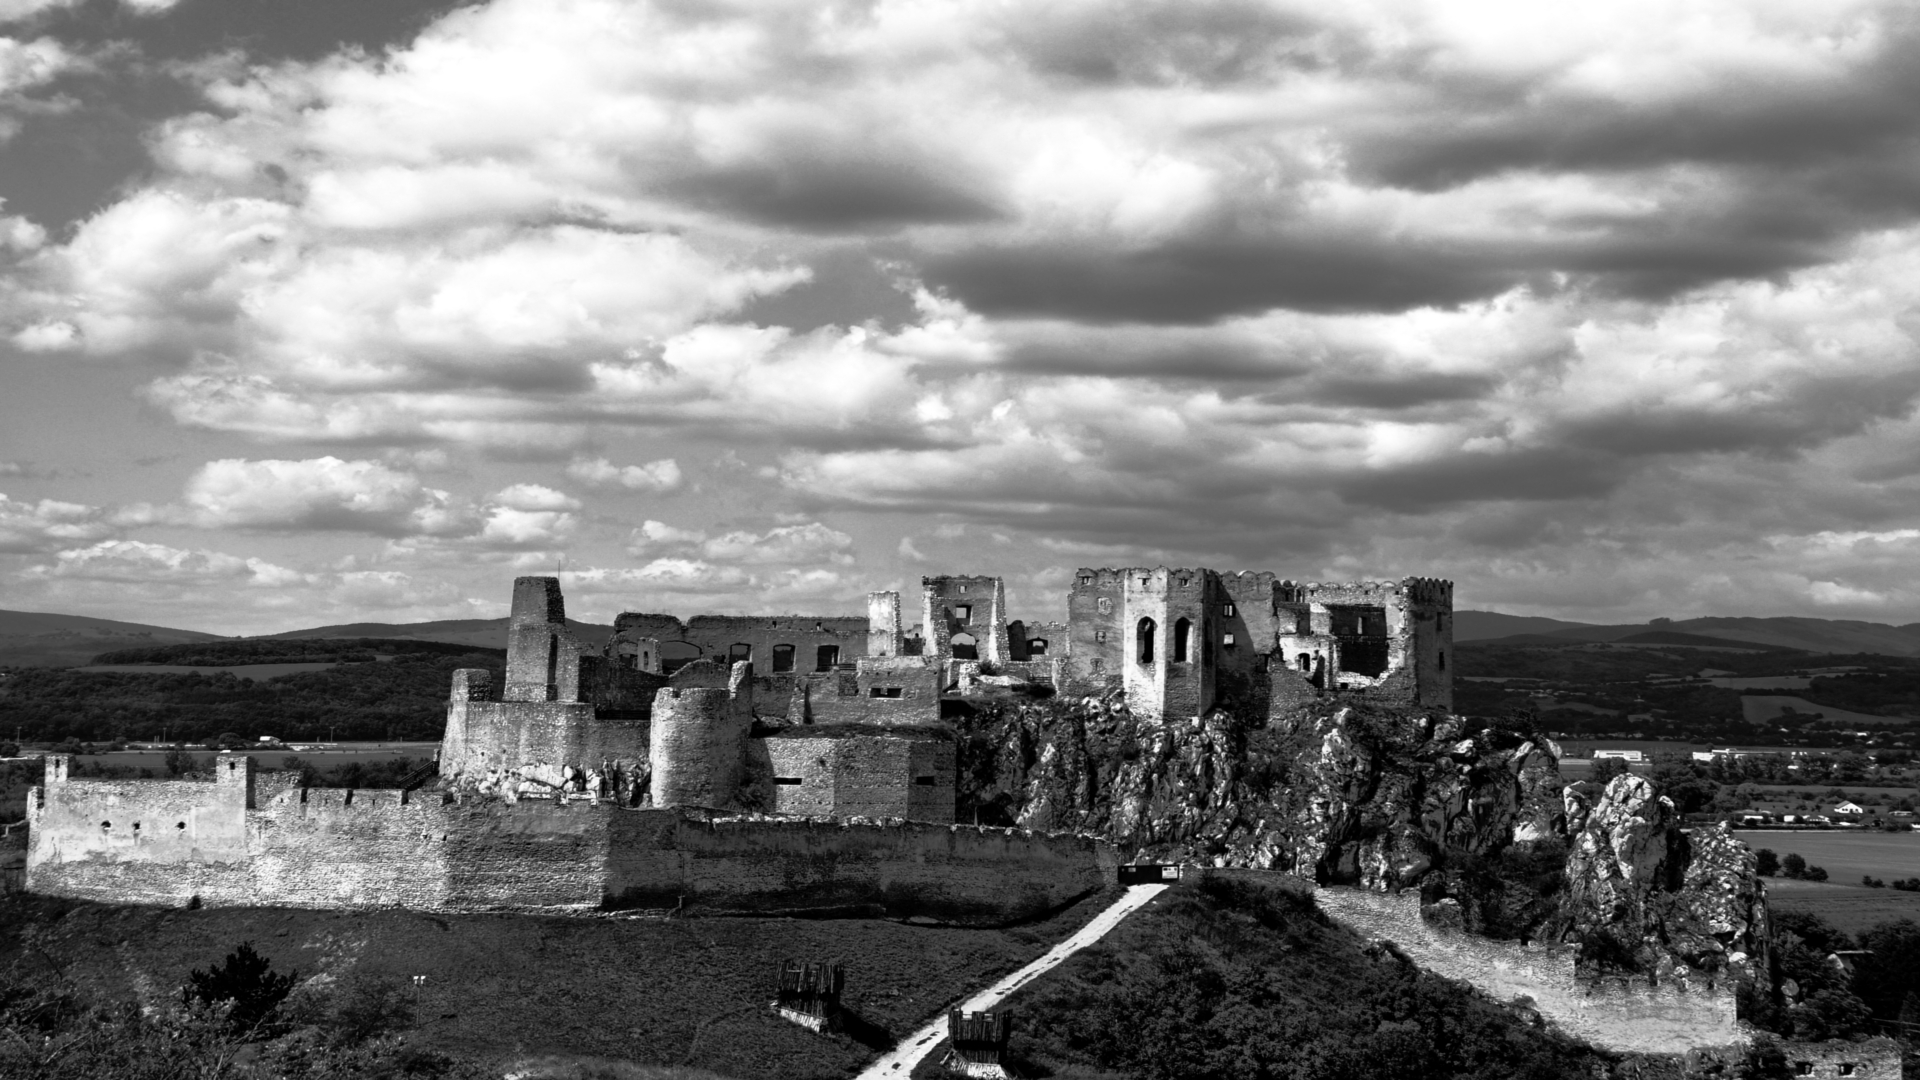 General 1920x1080 architecture ancient castle monochrome Slovakia ruins clouds landscape rocks hills